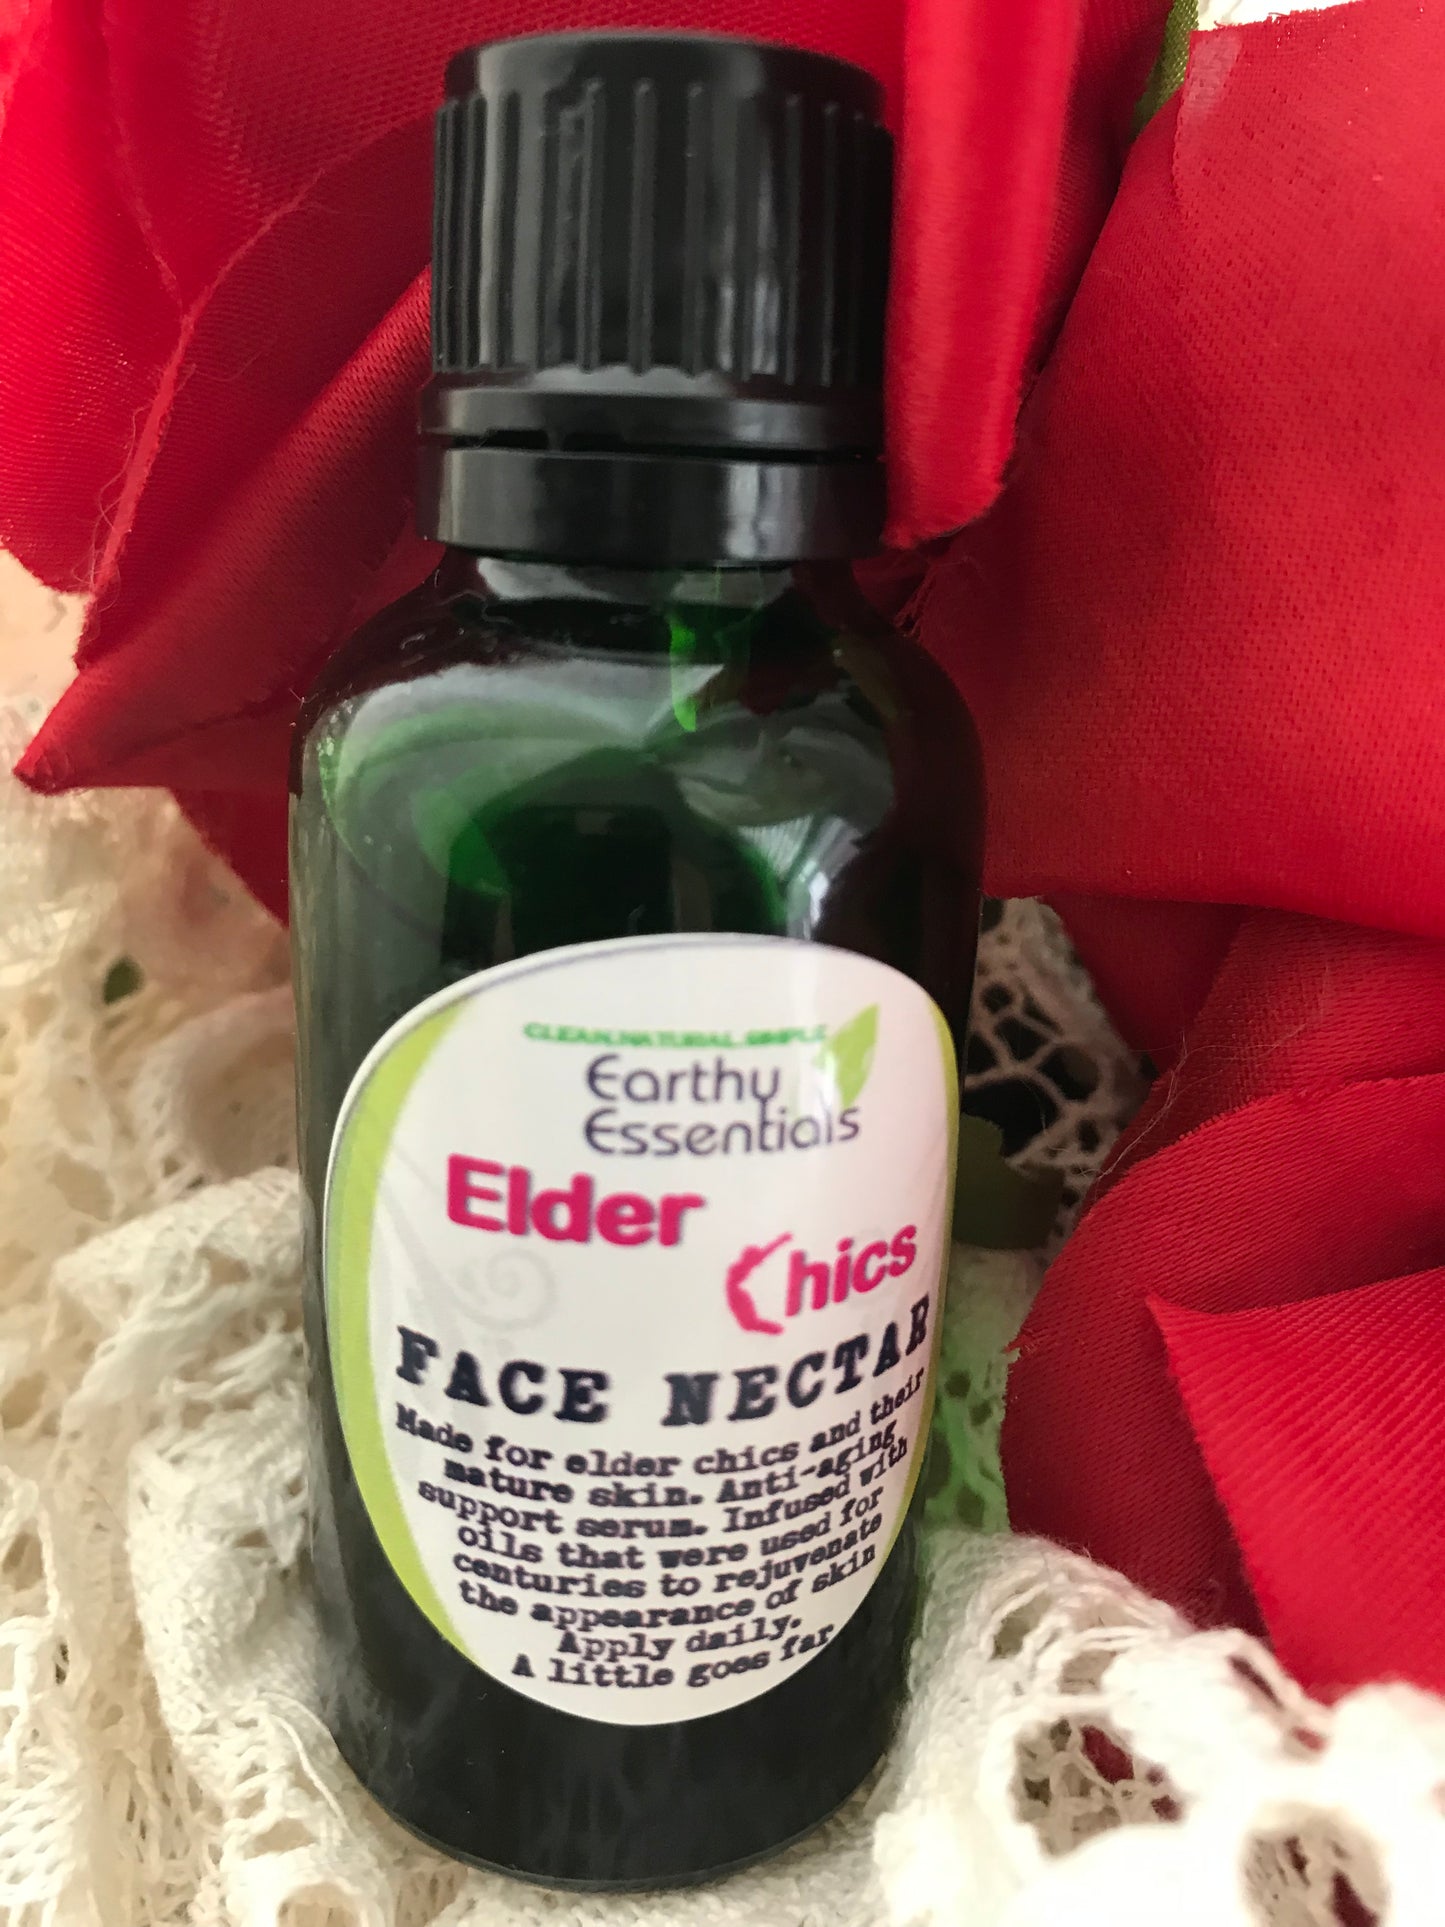 Elder Chics Face Nectar